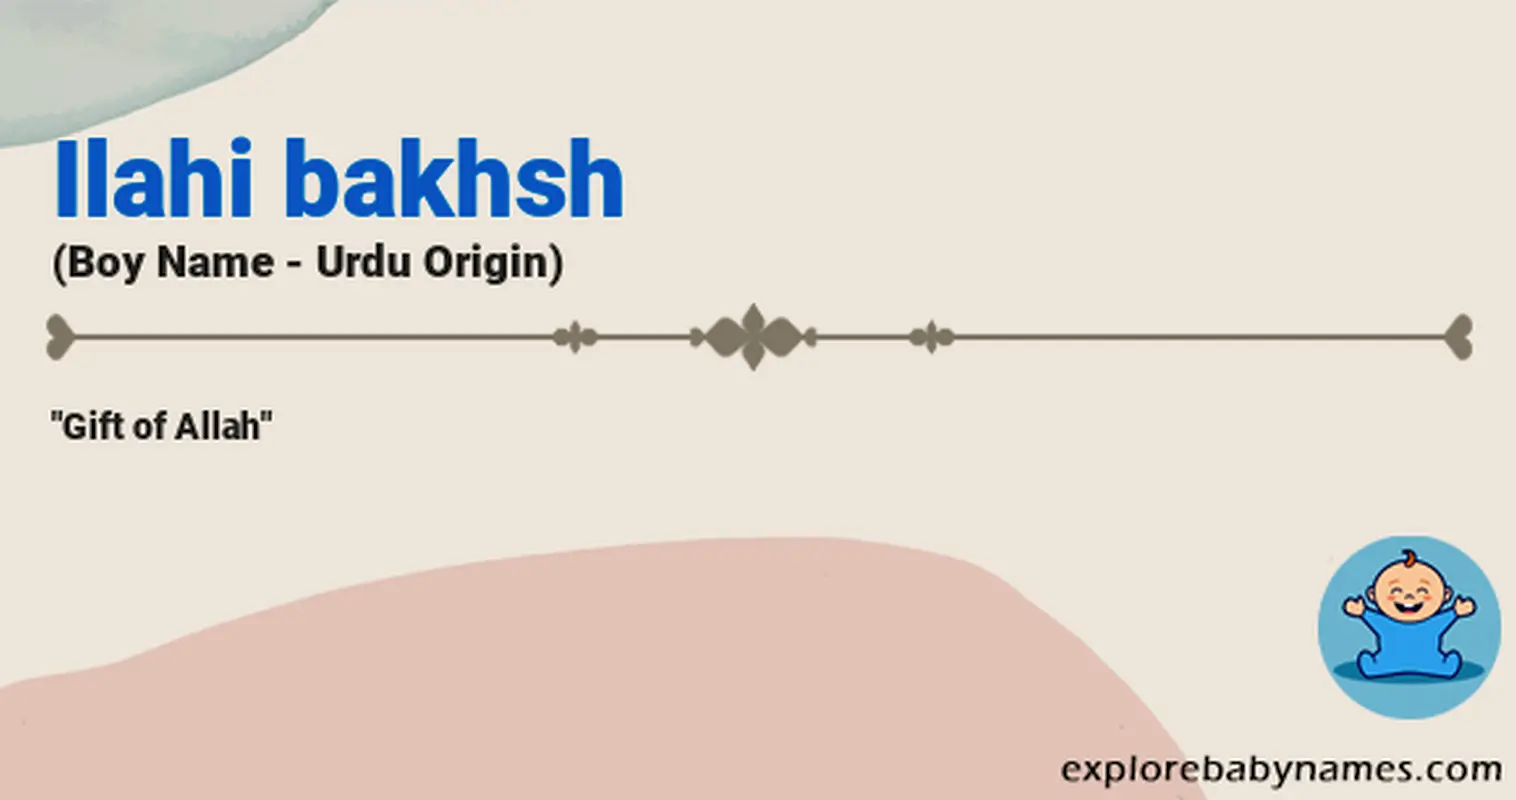 Meaning of Ilahi bakhsh